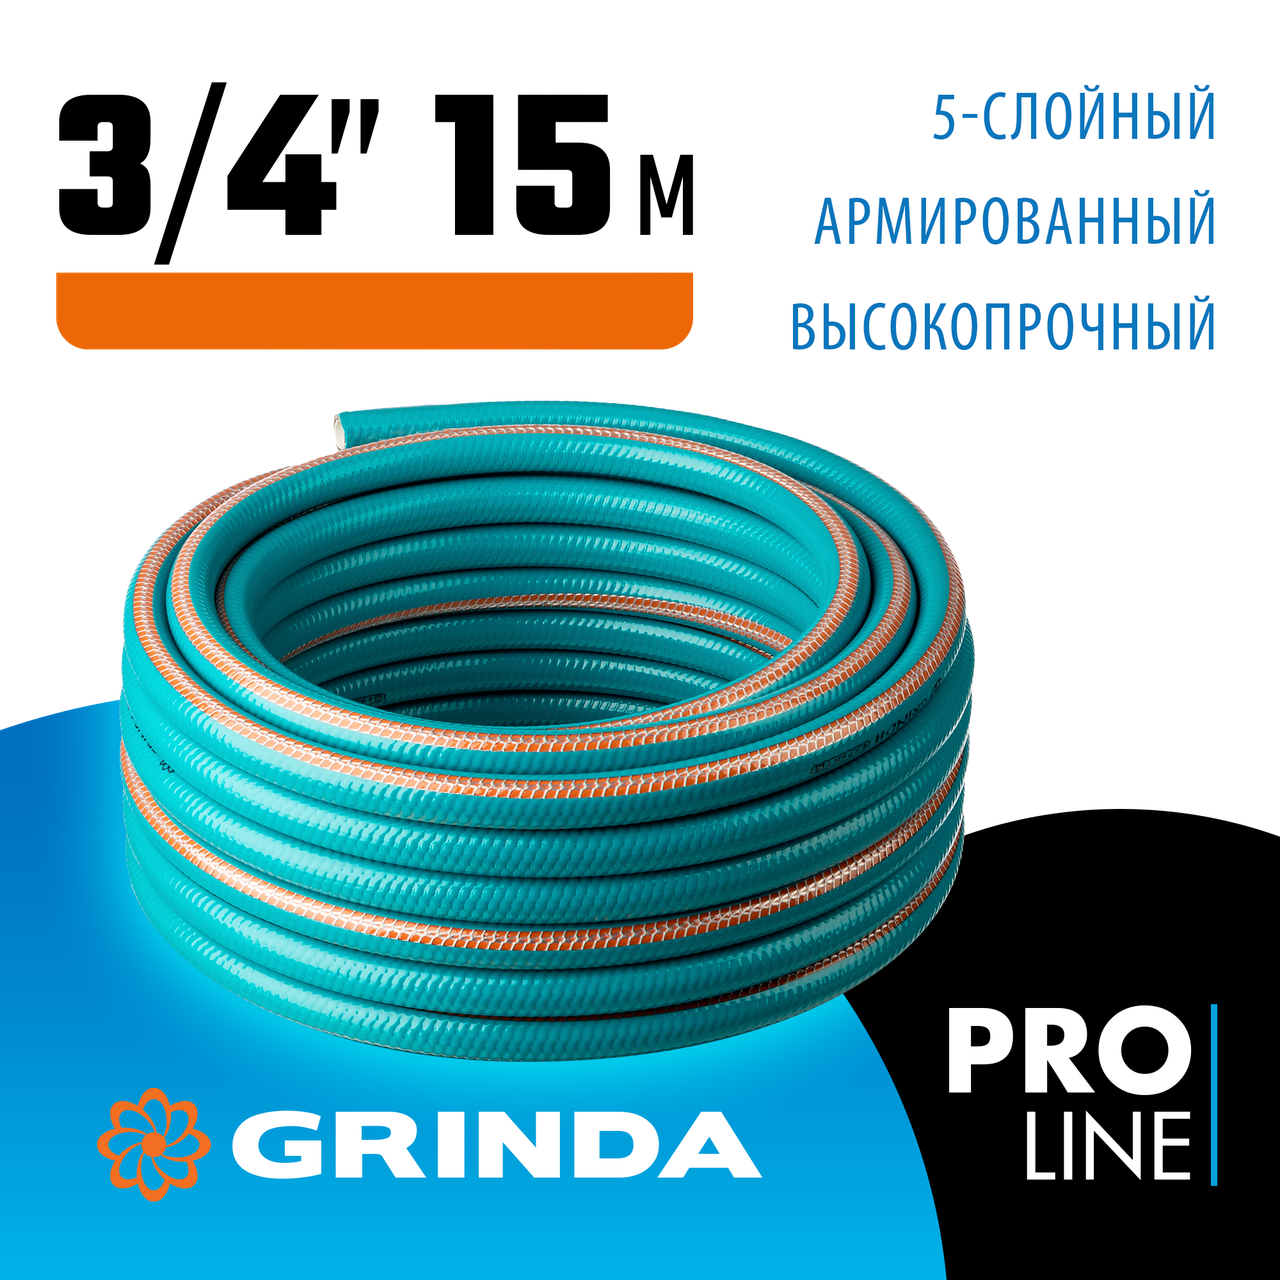 GRINDA 3/4"х15 м, 30 атм., 5-ти слойный, армированный, шланг поливочный PROLine 429007-3/4-15